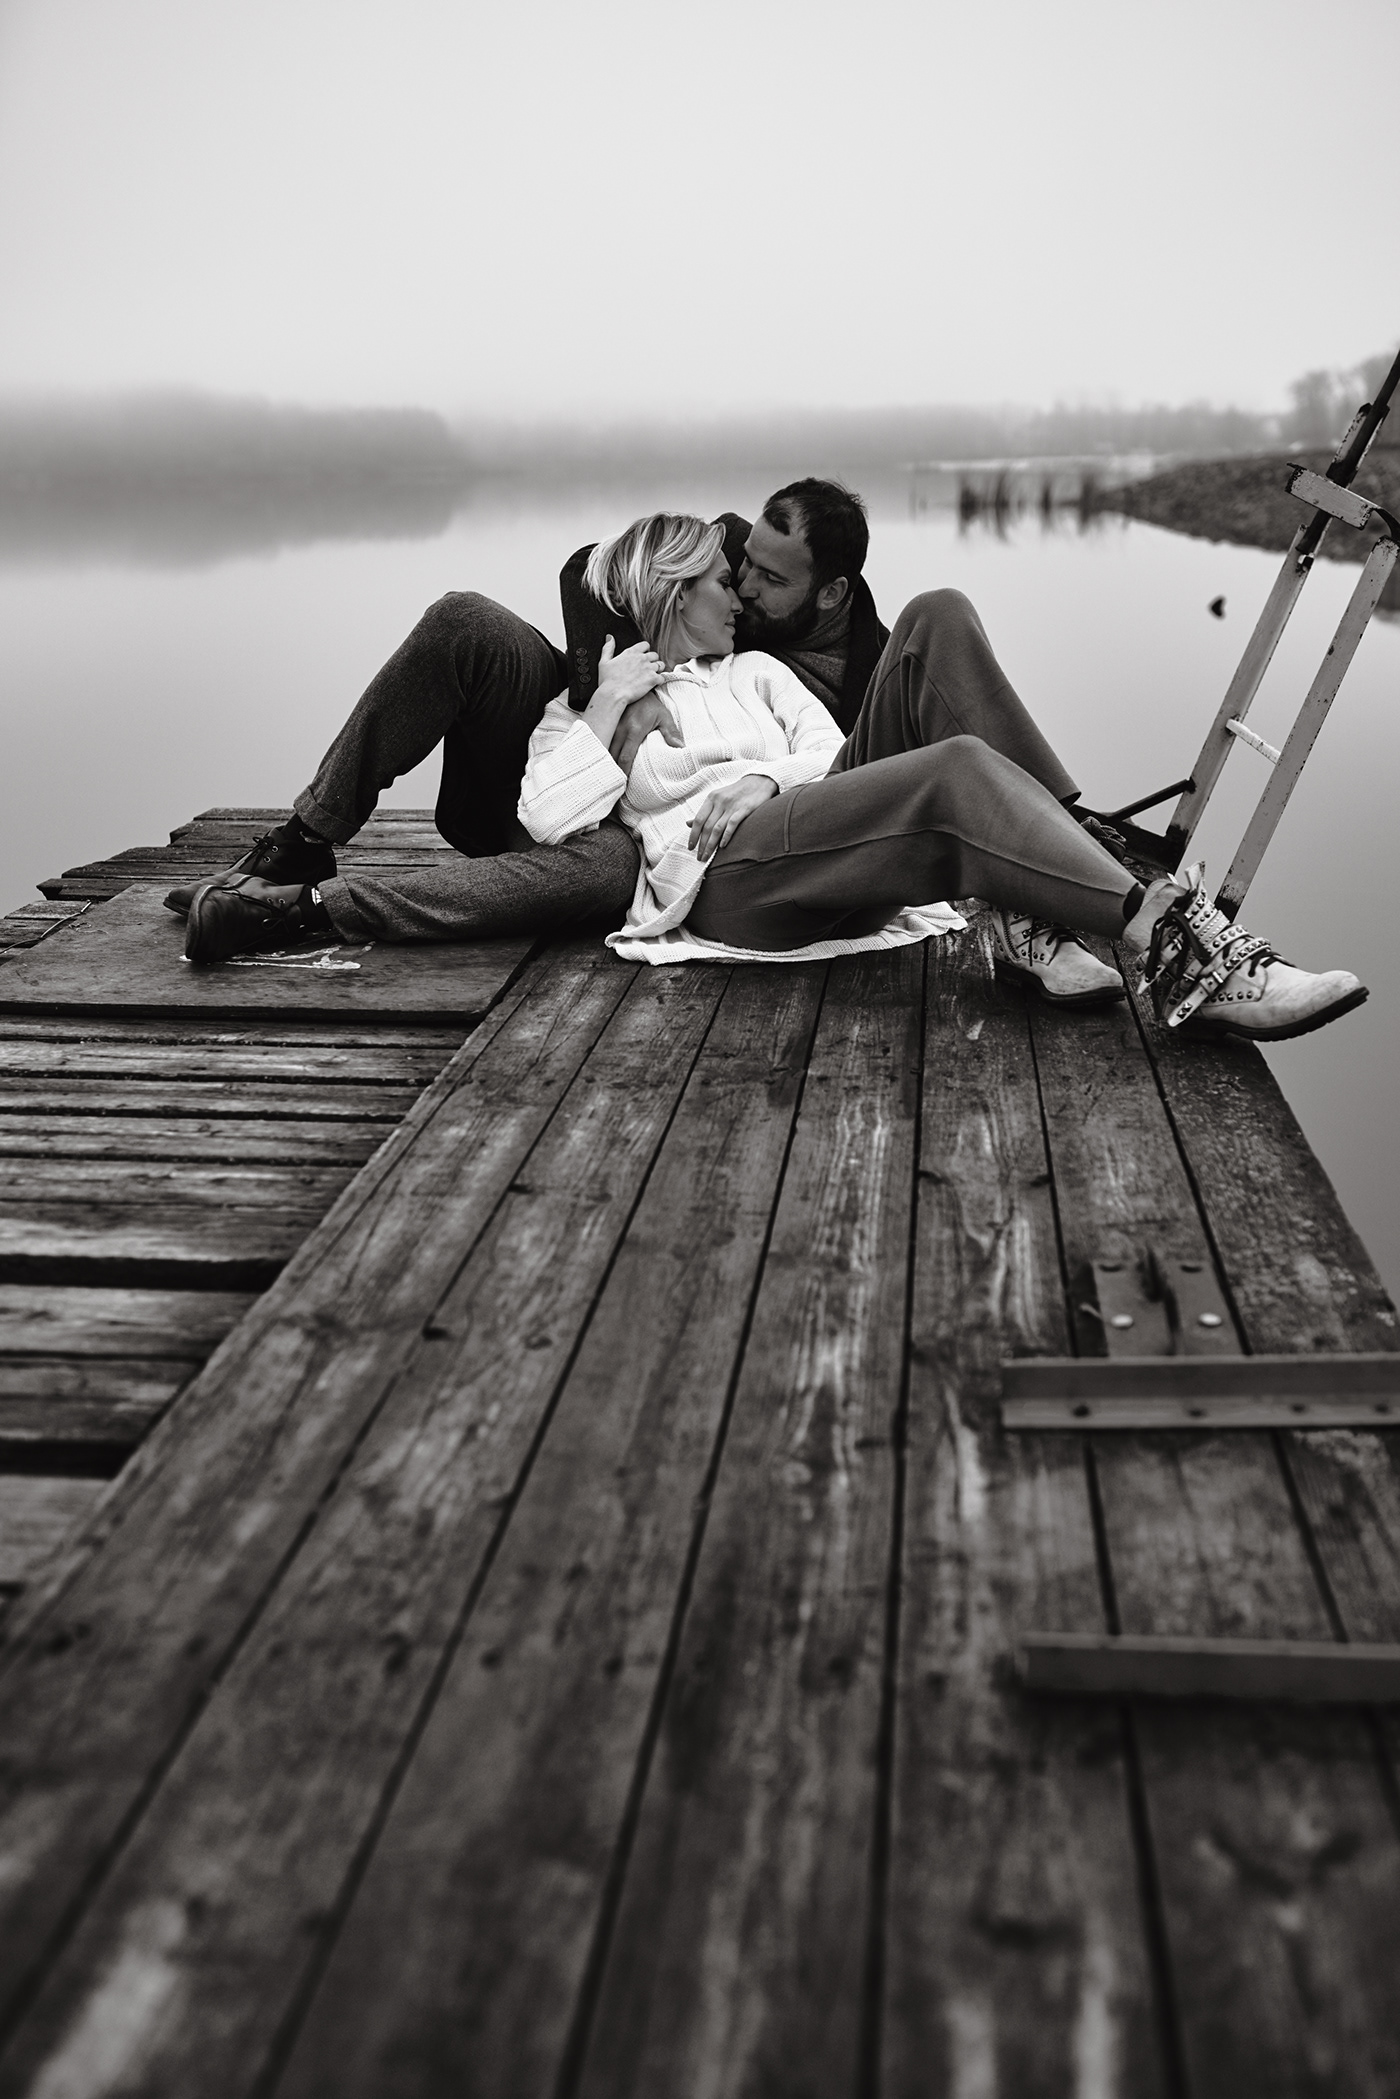 berth boat couple igor novikov isnovikov Love love story lovestory pier